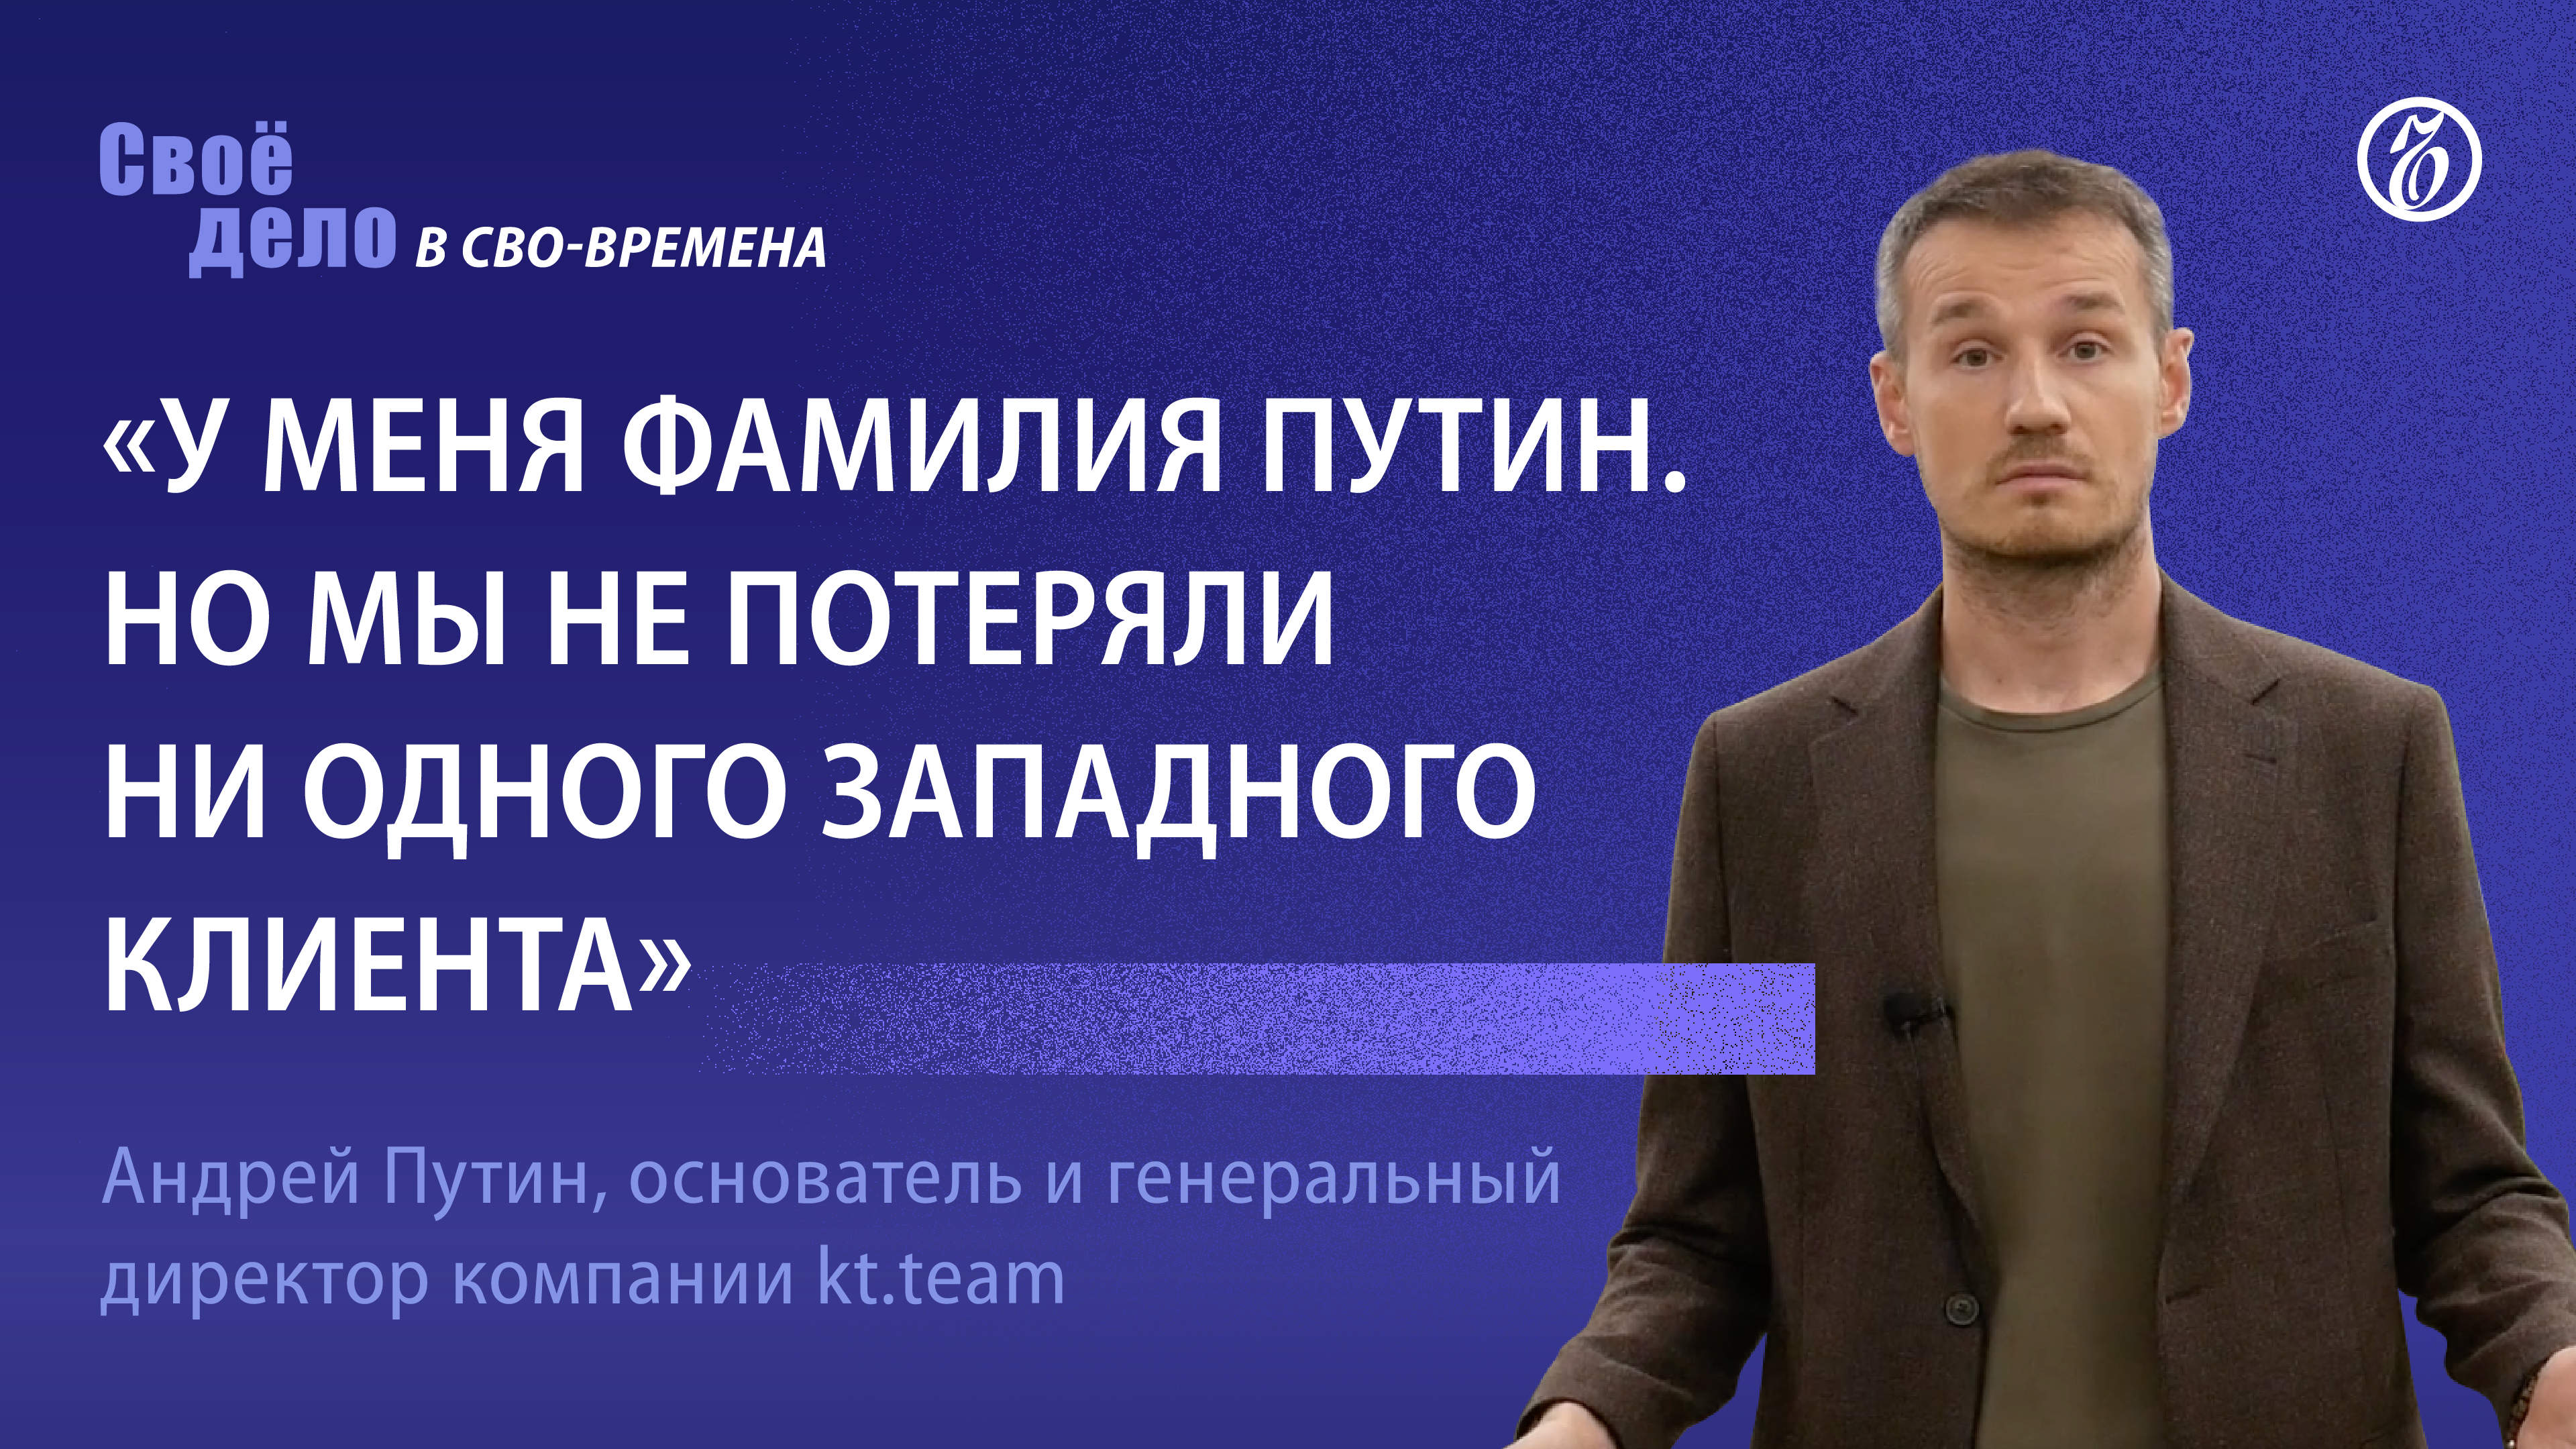 Андрей Путин (kt.team): «У меня фамилия Путин. Но мы не потеряли ни одного западного клиента»